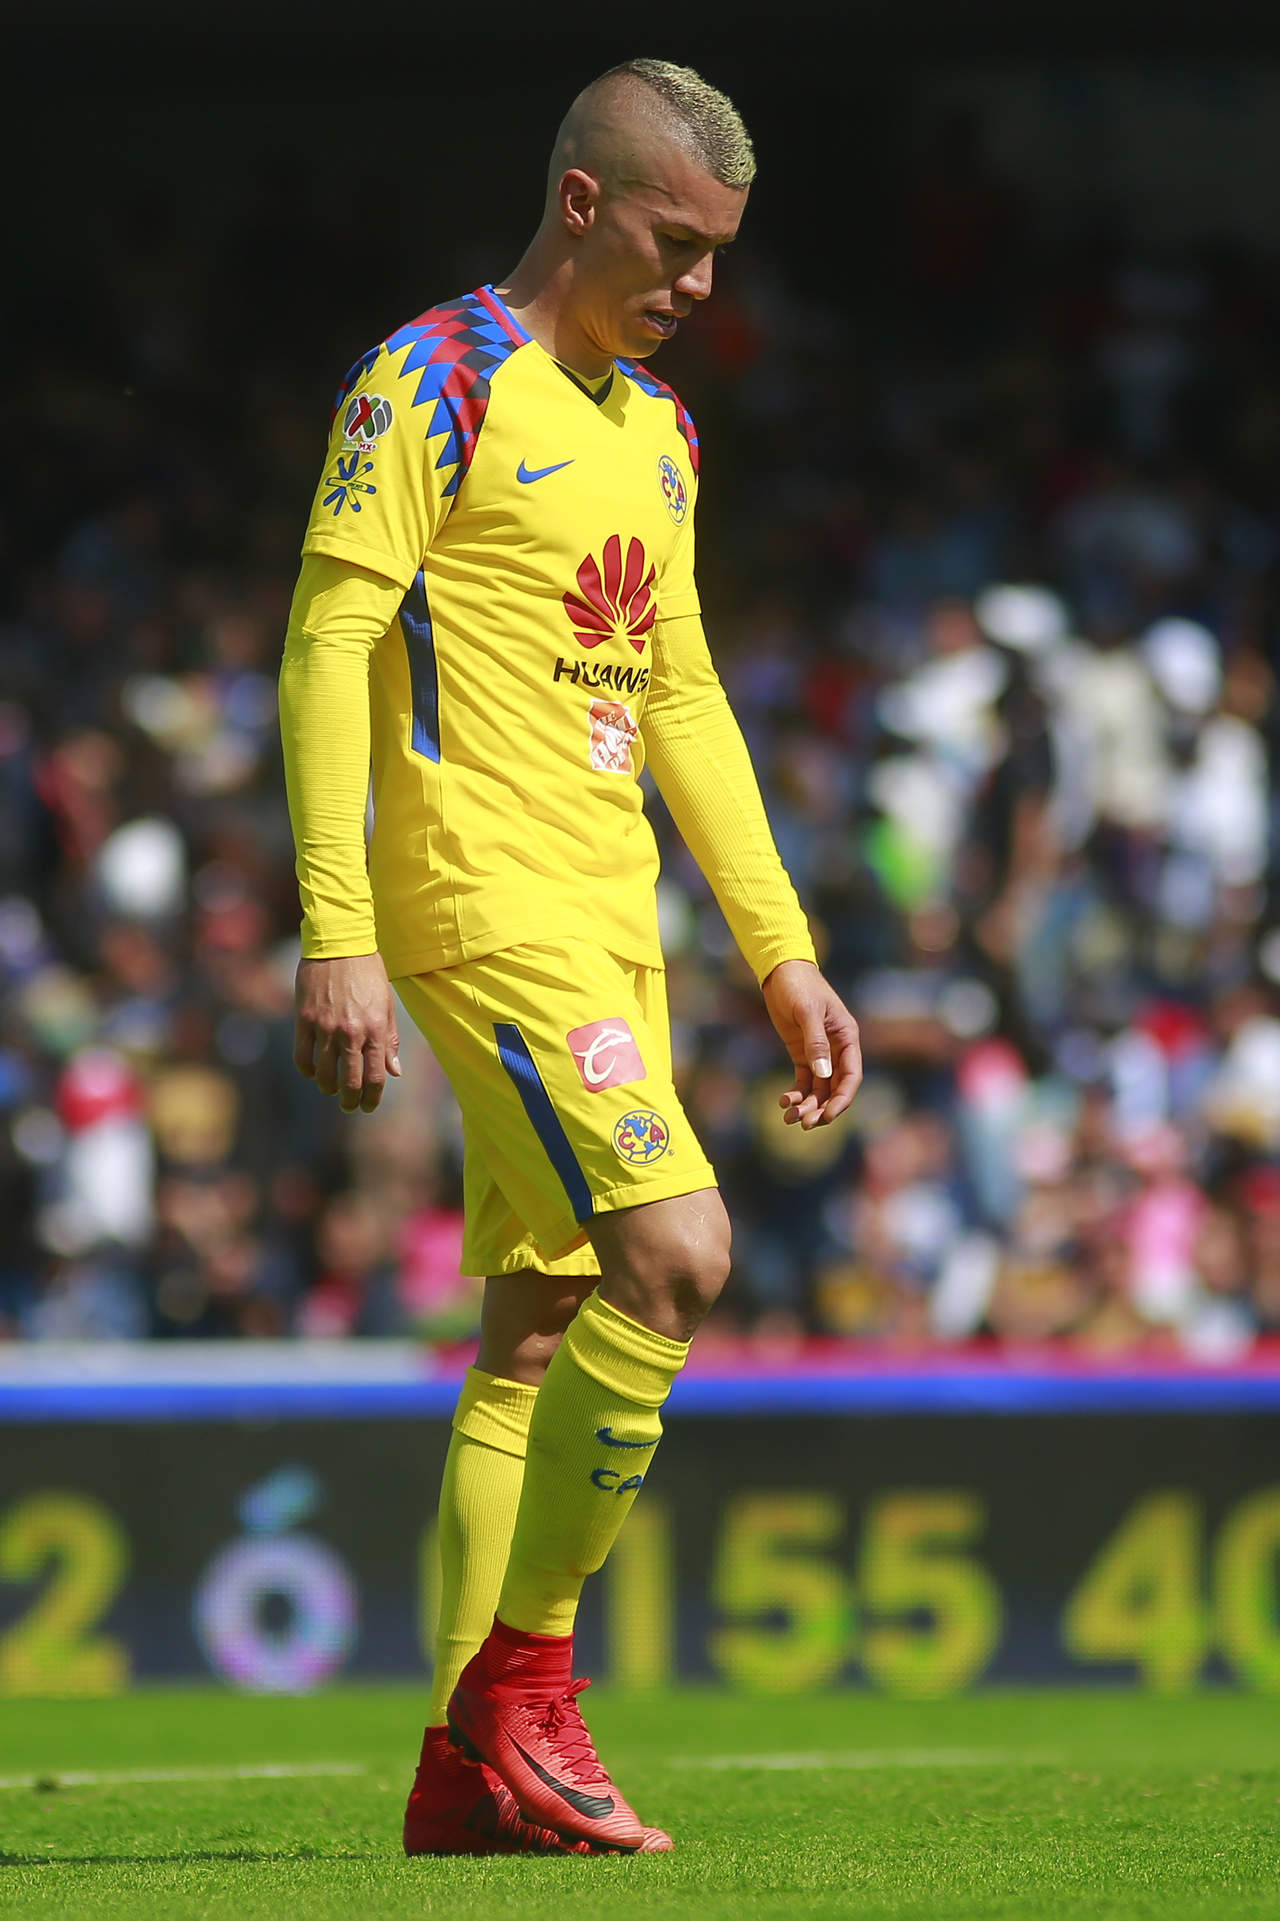 La directiva azulcrema cree que no ha sido justo el castigo para el jugador colombiano. (JAM MEDIA)